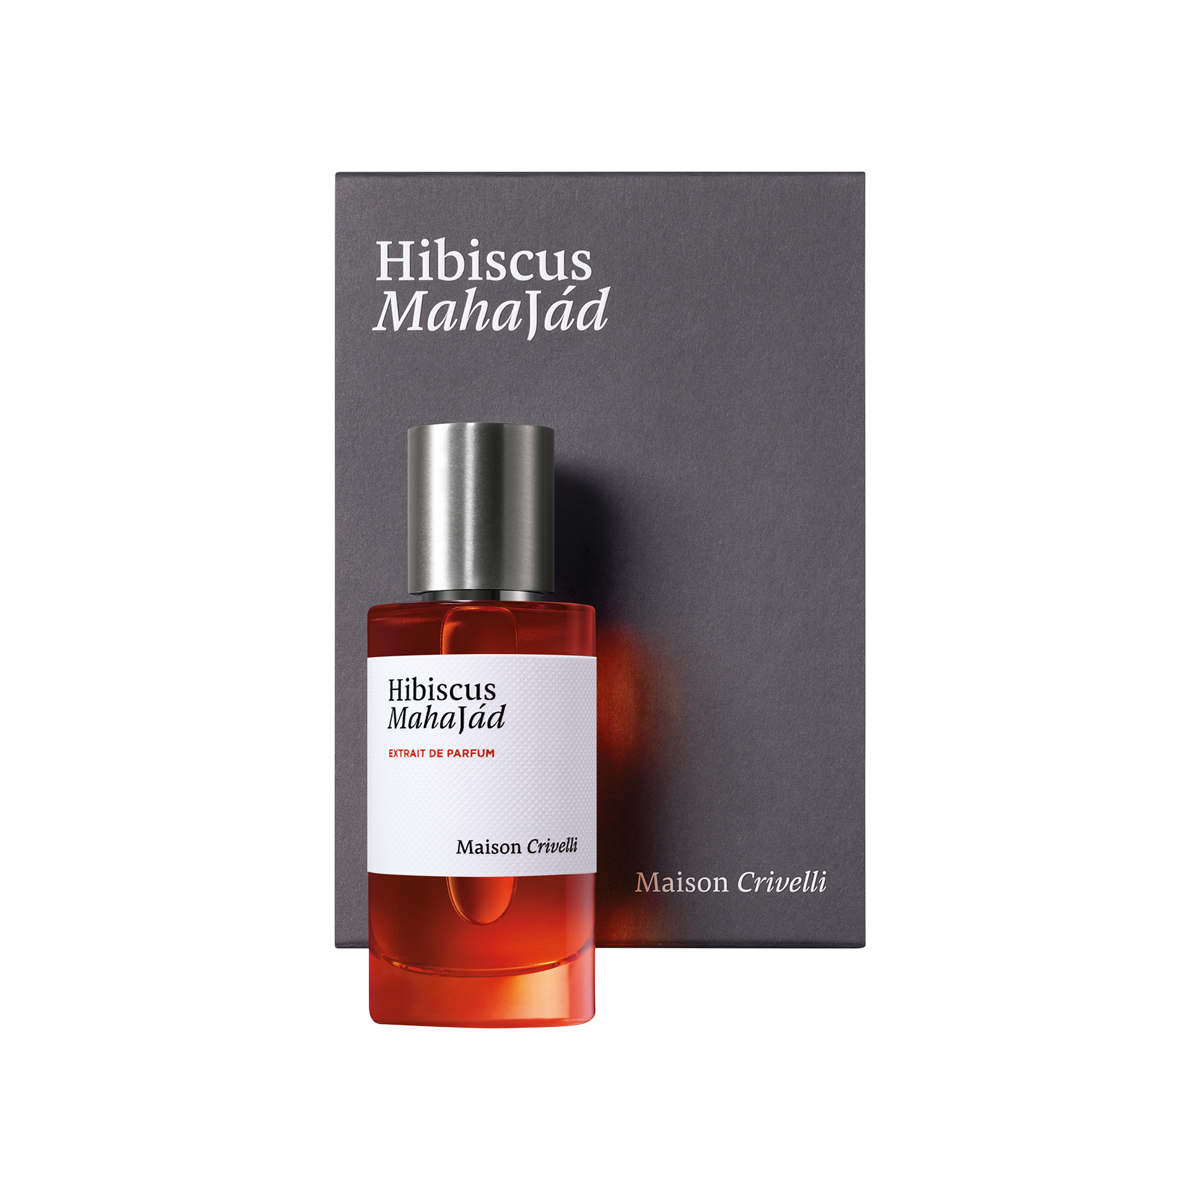 Maison Crivelli - Hibiscus MahaJád Extrait de Parfum